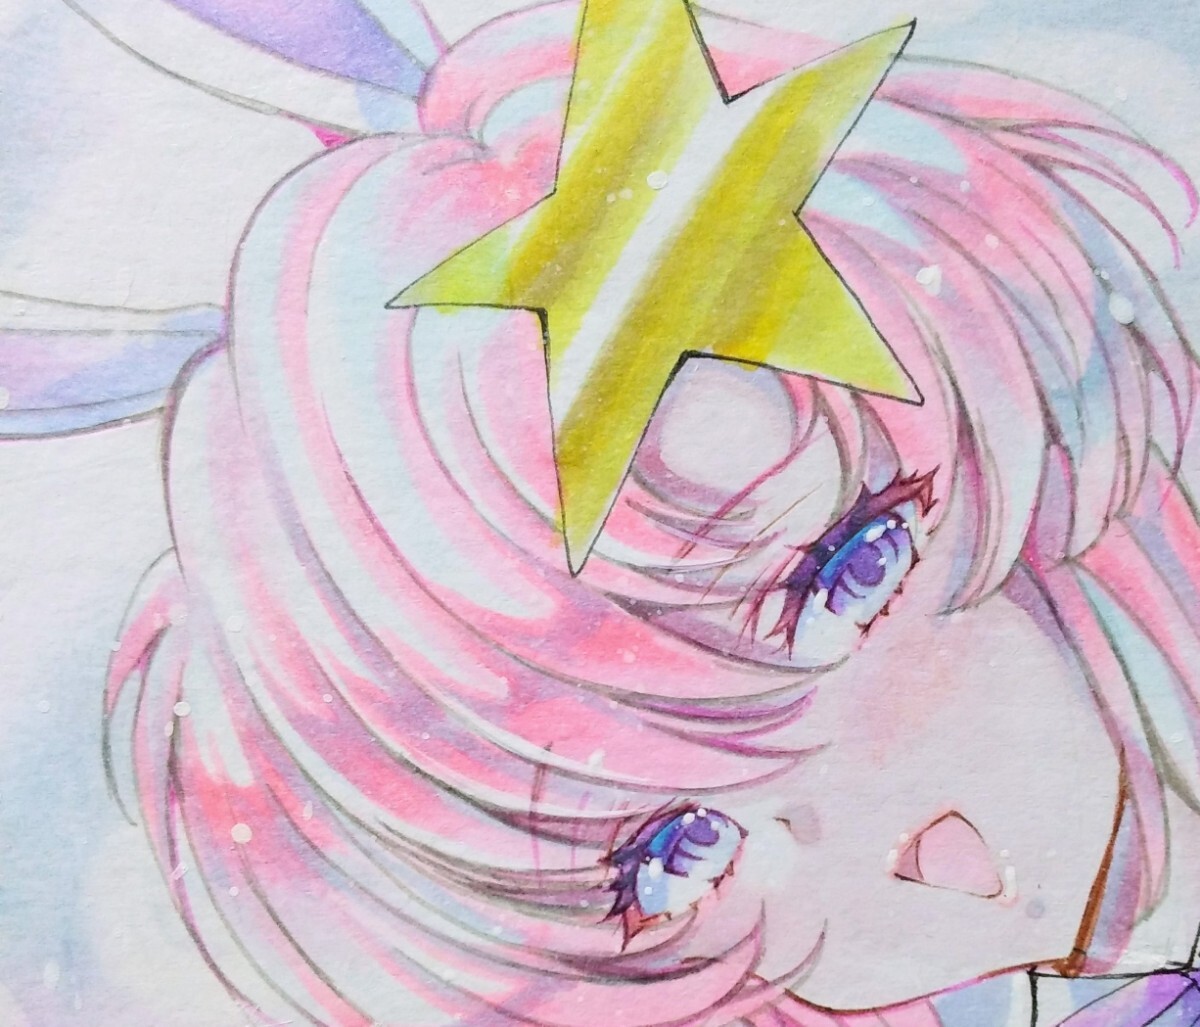 Papel de color [Meer Campbell Bunny Gundam] Bunny Girl Doujin Ilustración original dibujada a mano Ilustración de niña, historietas, productos de anime, ilustración dibujada a mano